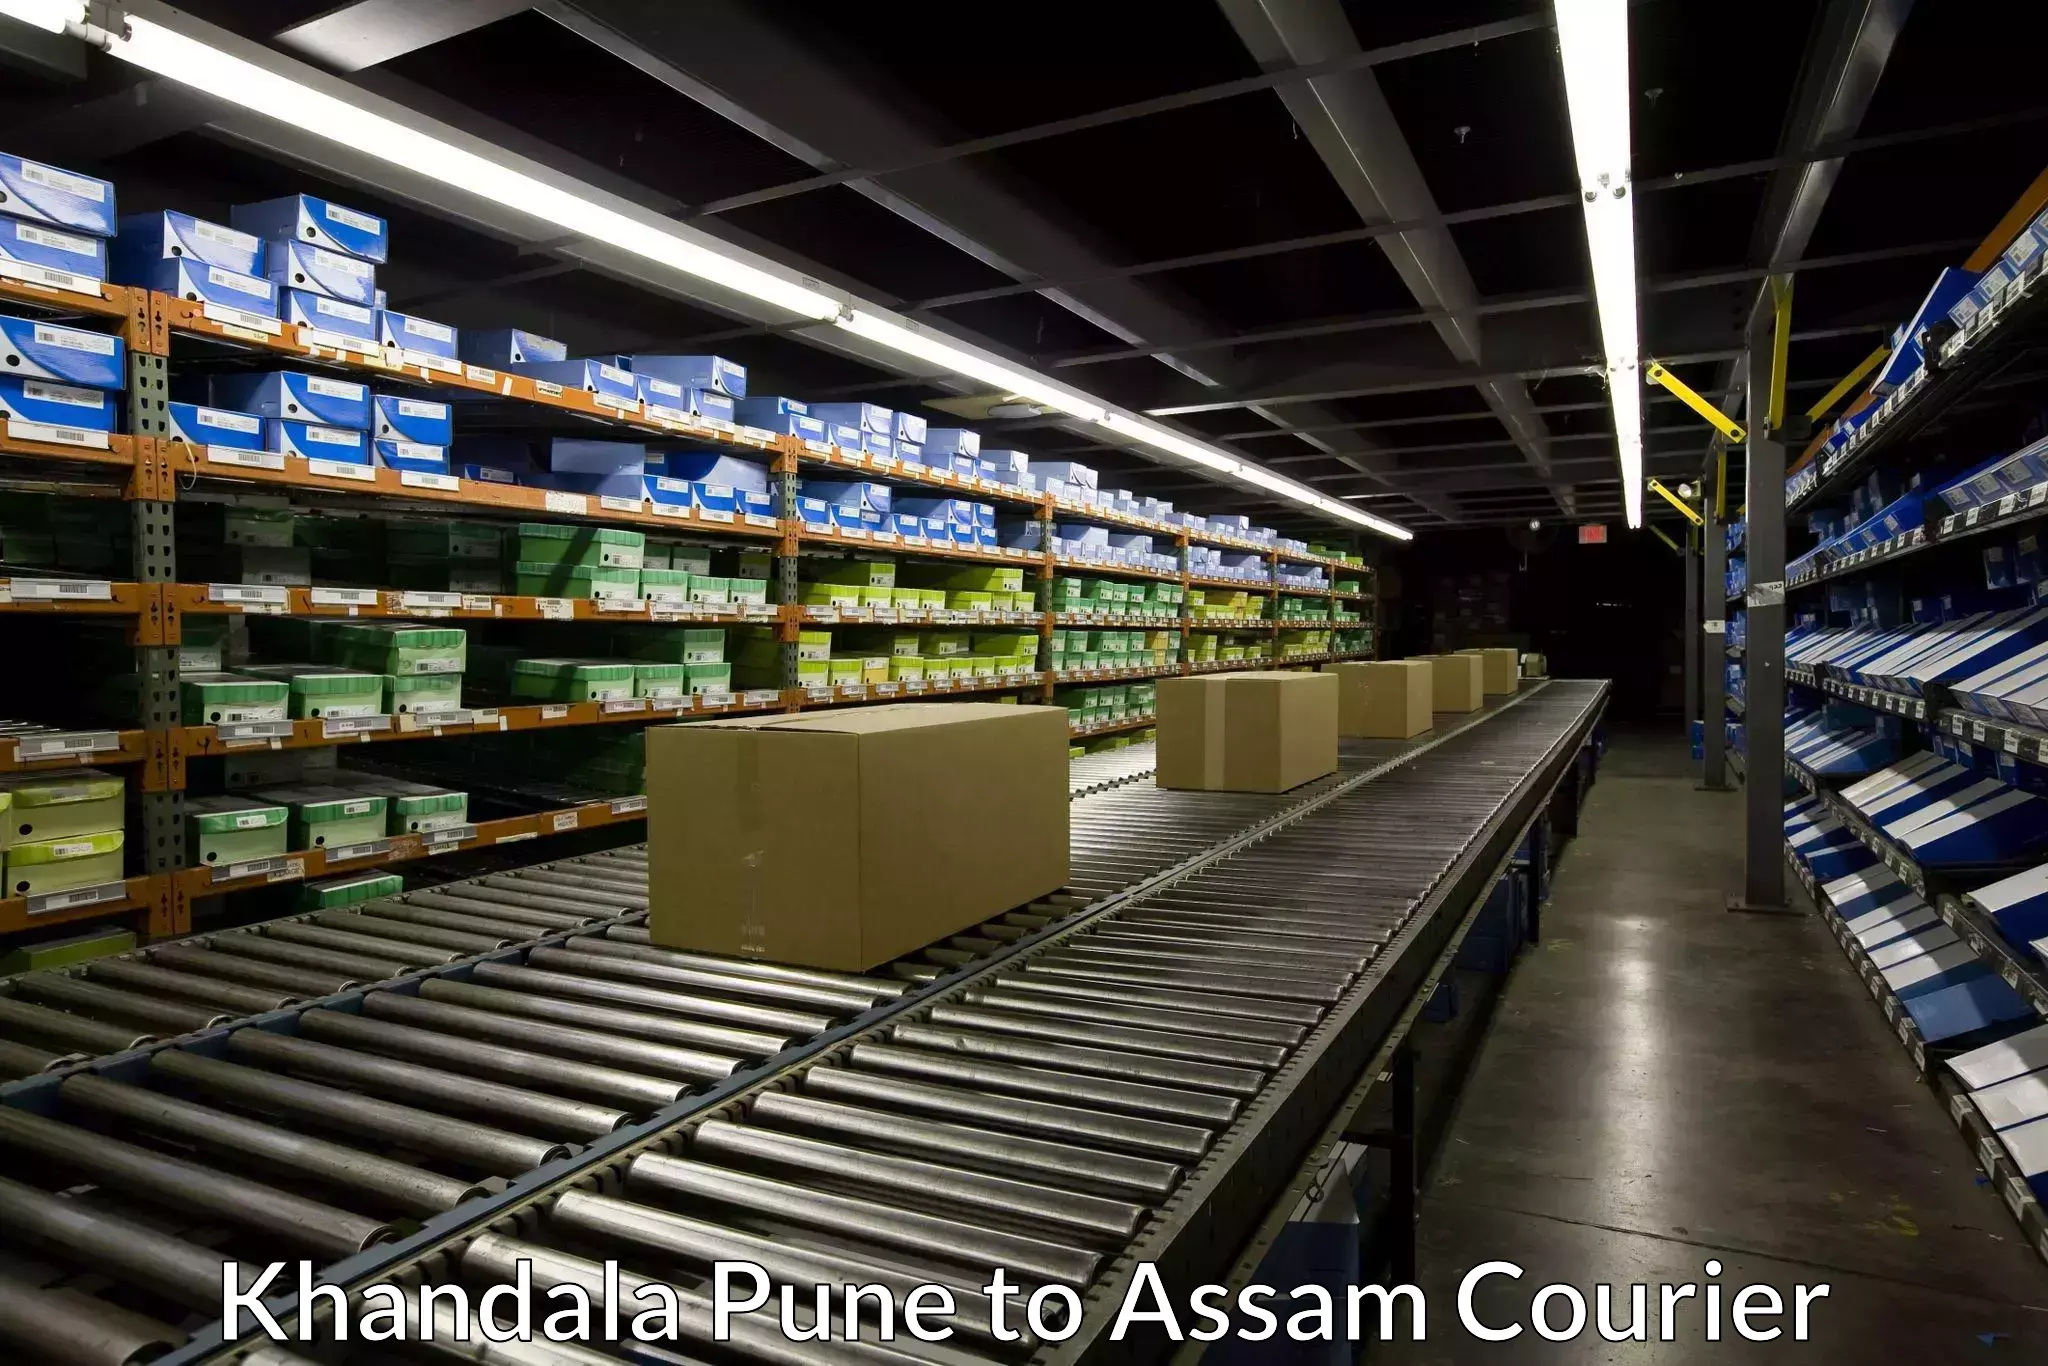 Specialized shipment handling in Khandala Pune to Assam